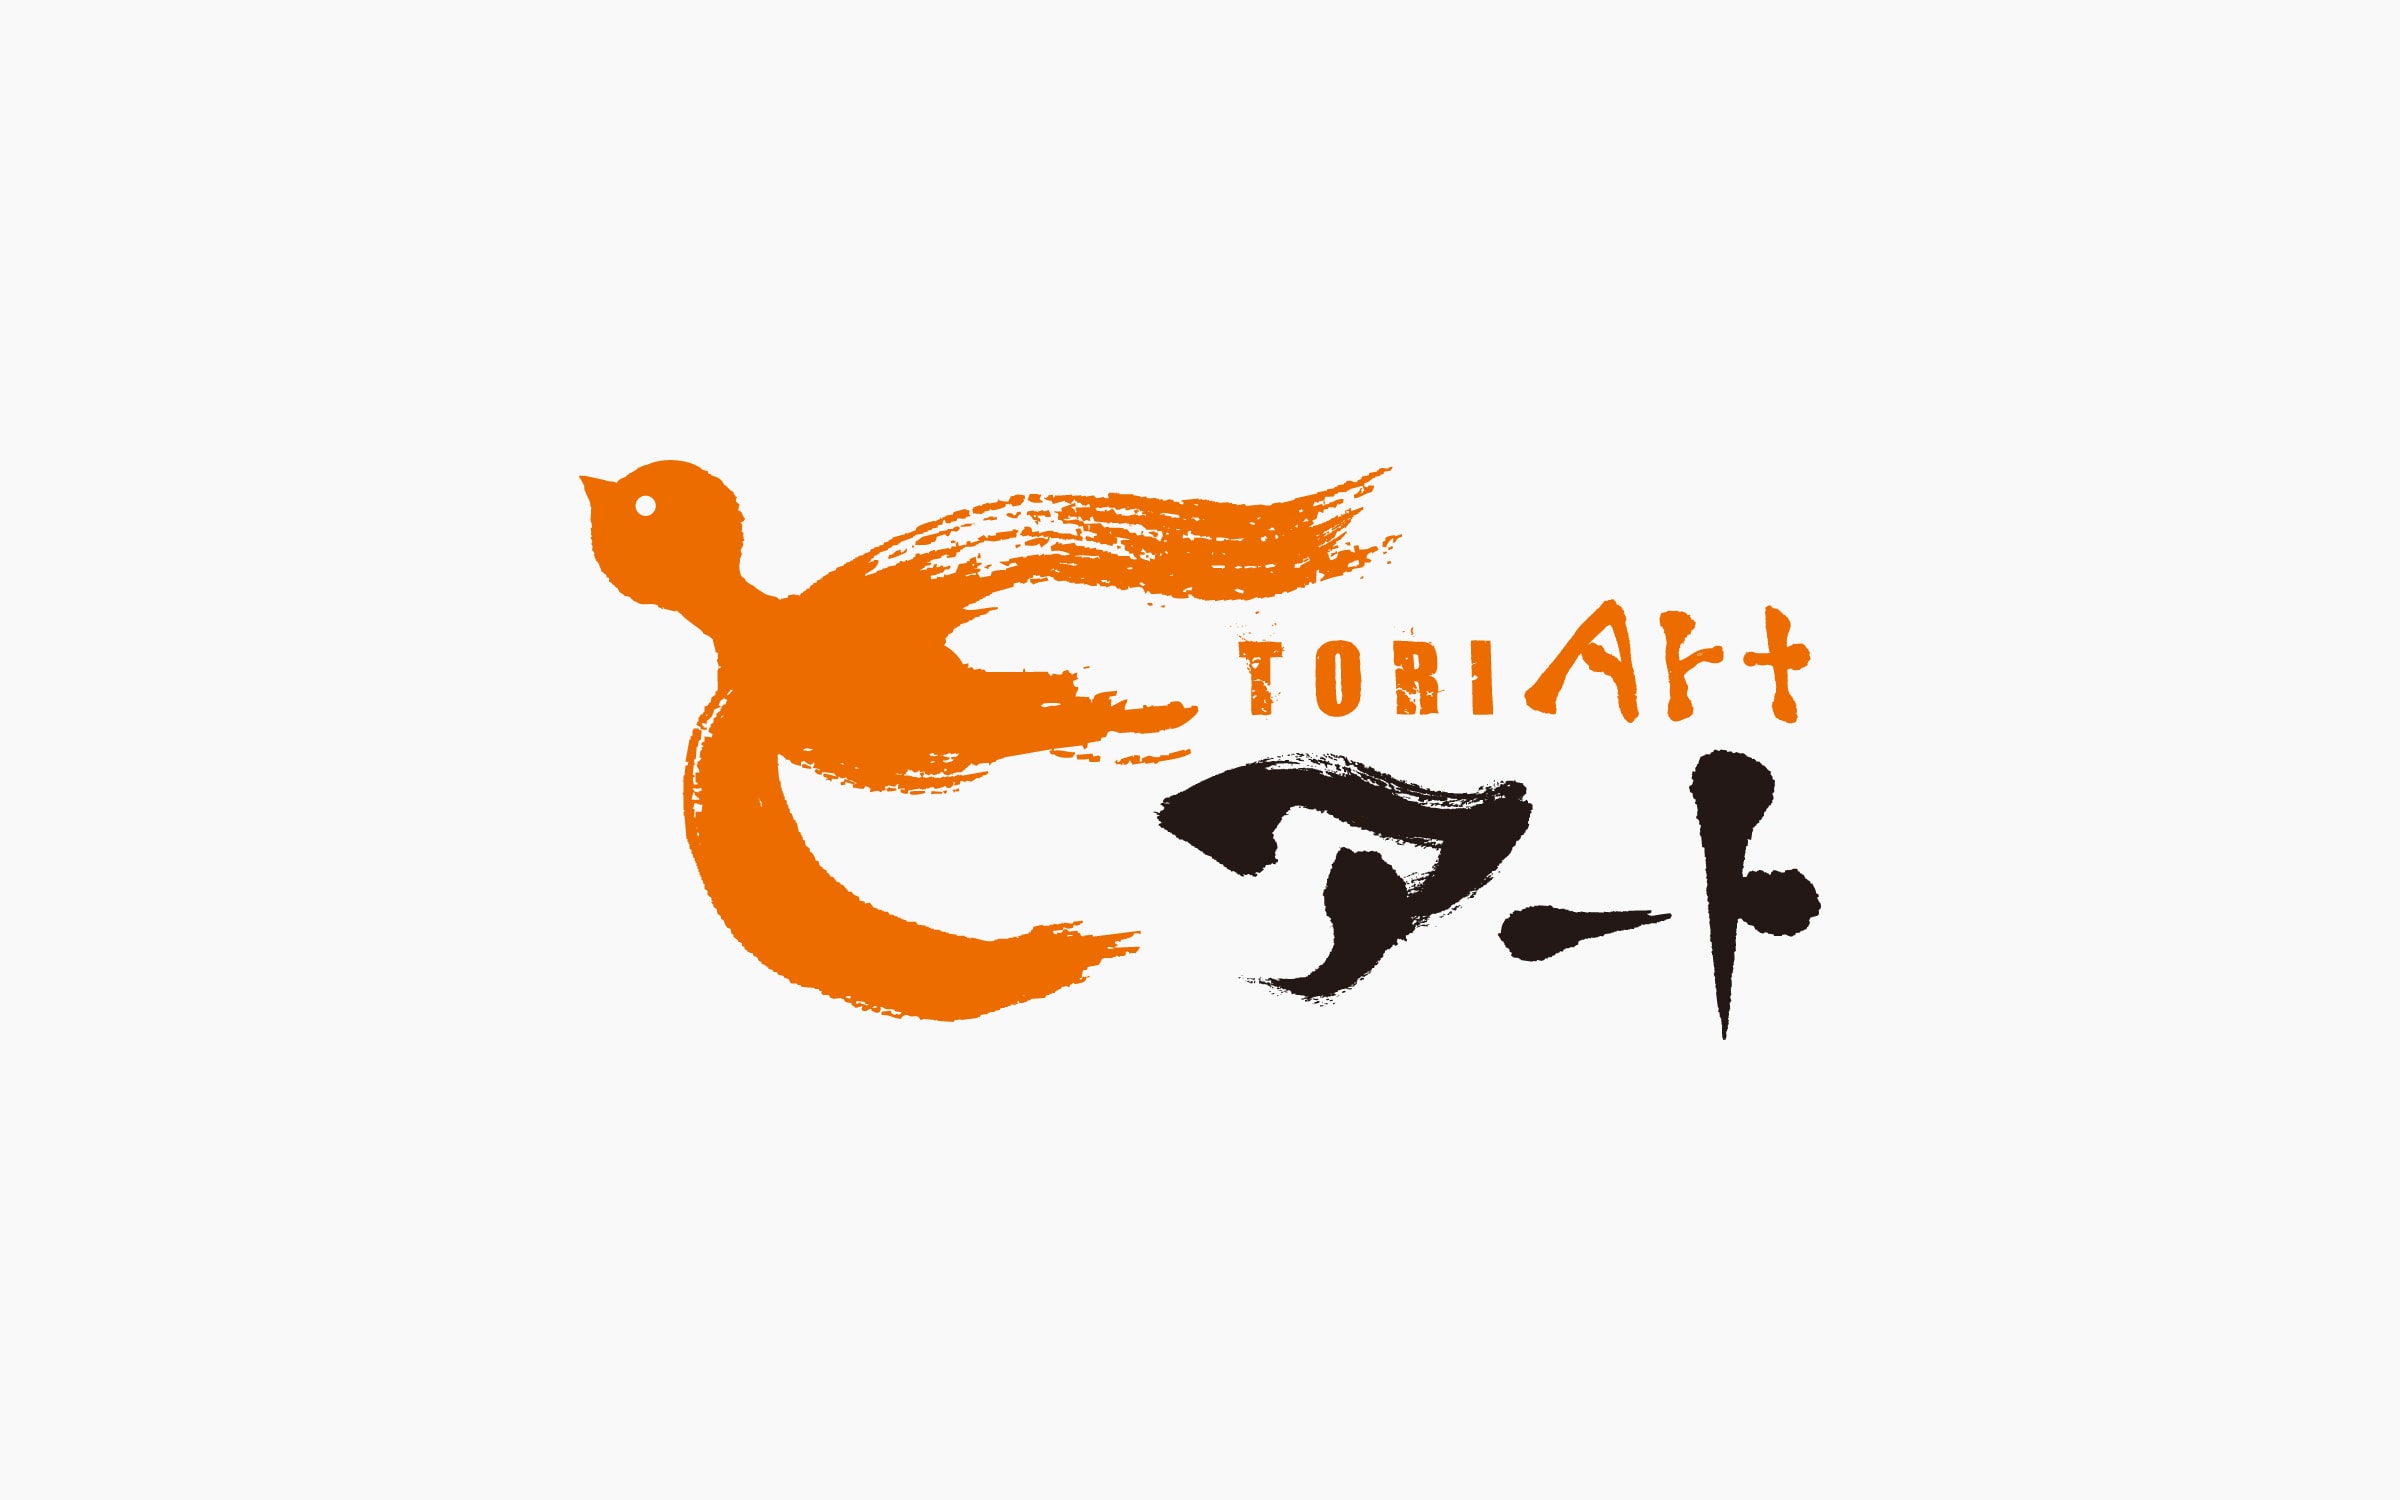 鳥取県総合芸術文化祭「とりアート」 VI